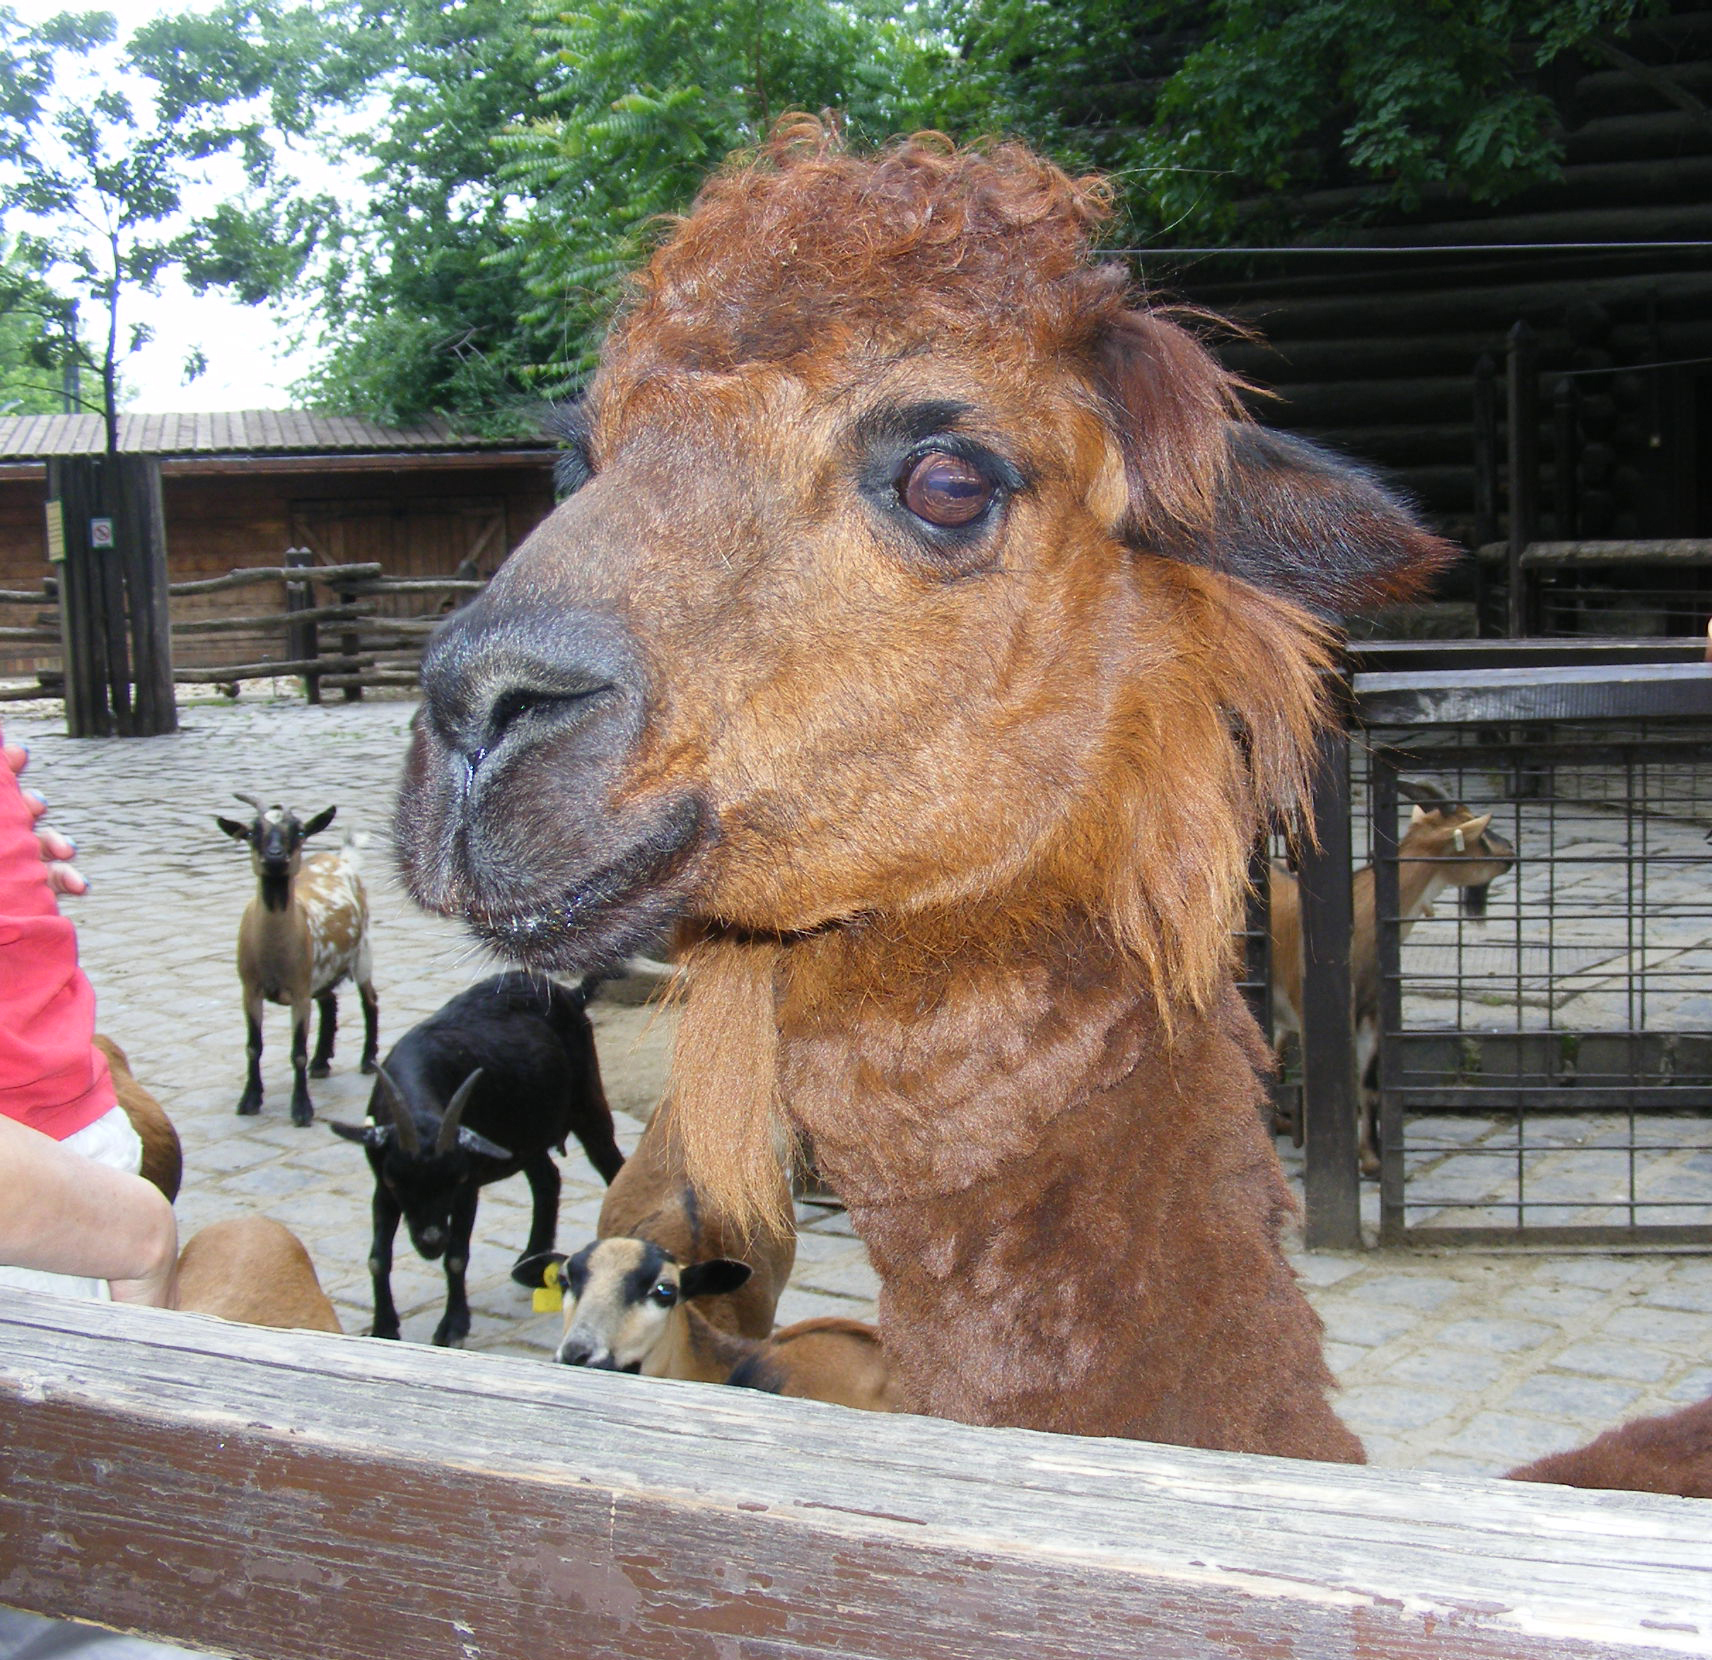 llama, Animal, Head, Zoo, HQ Photo